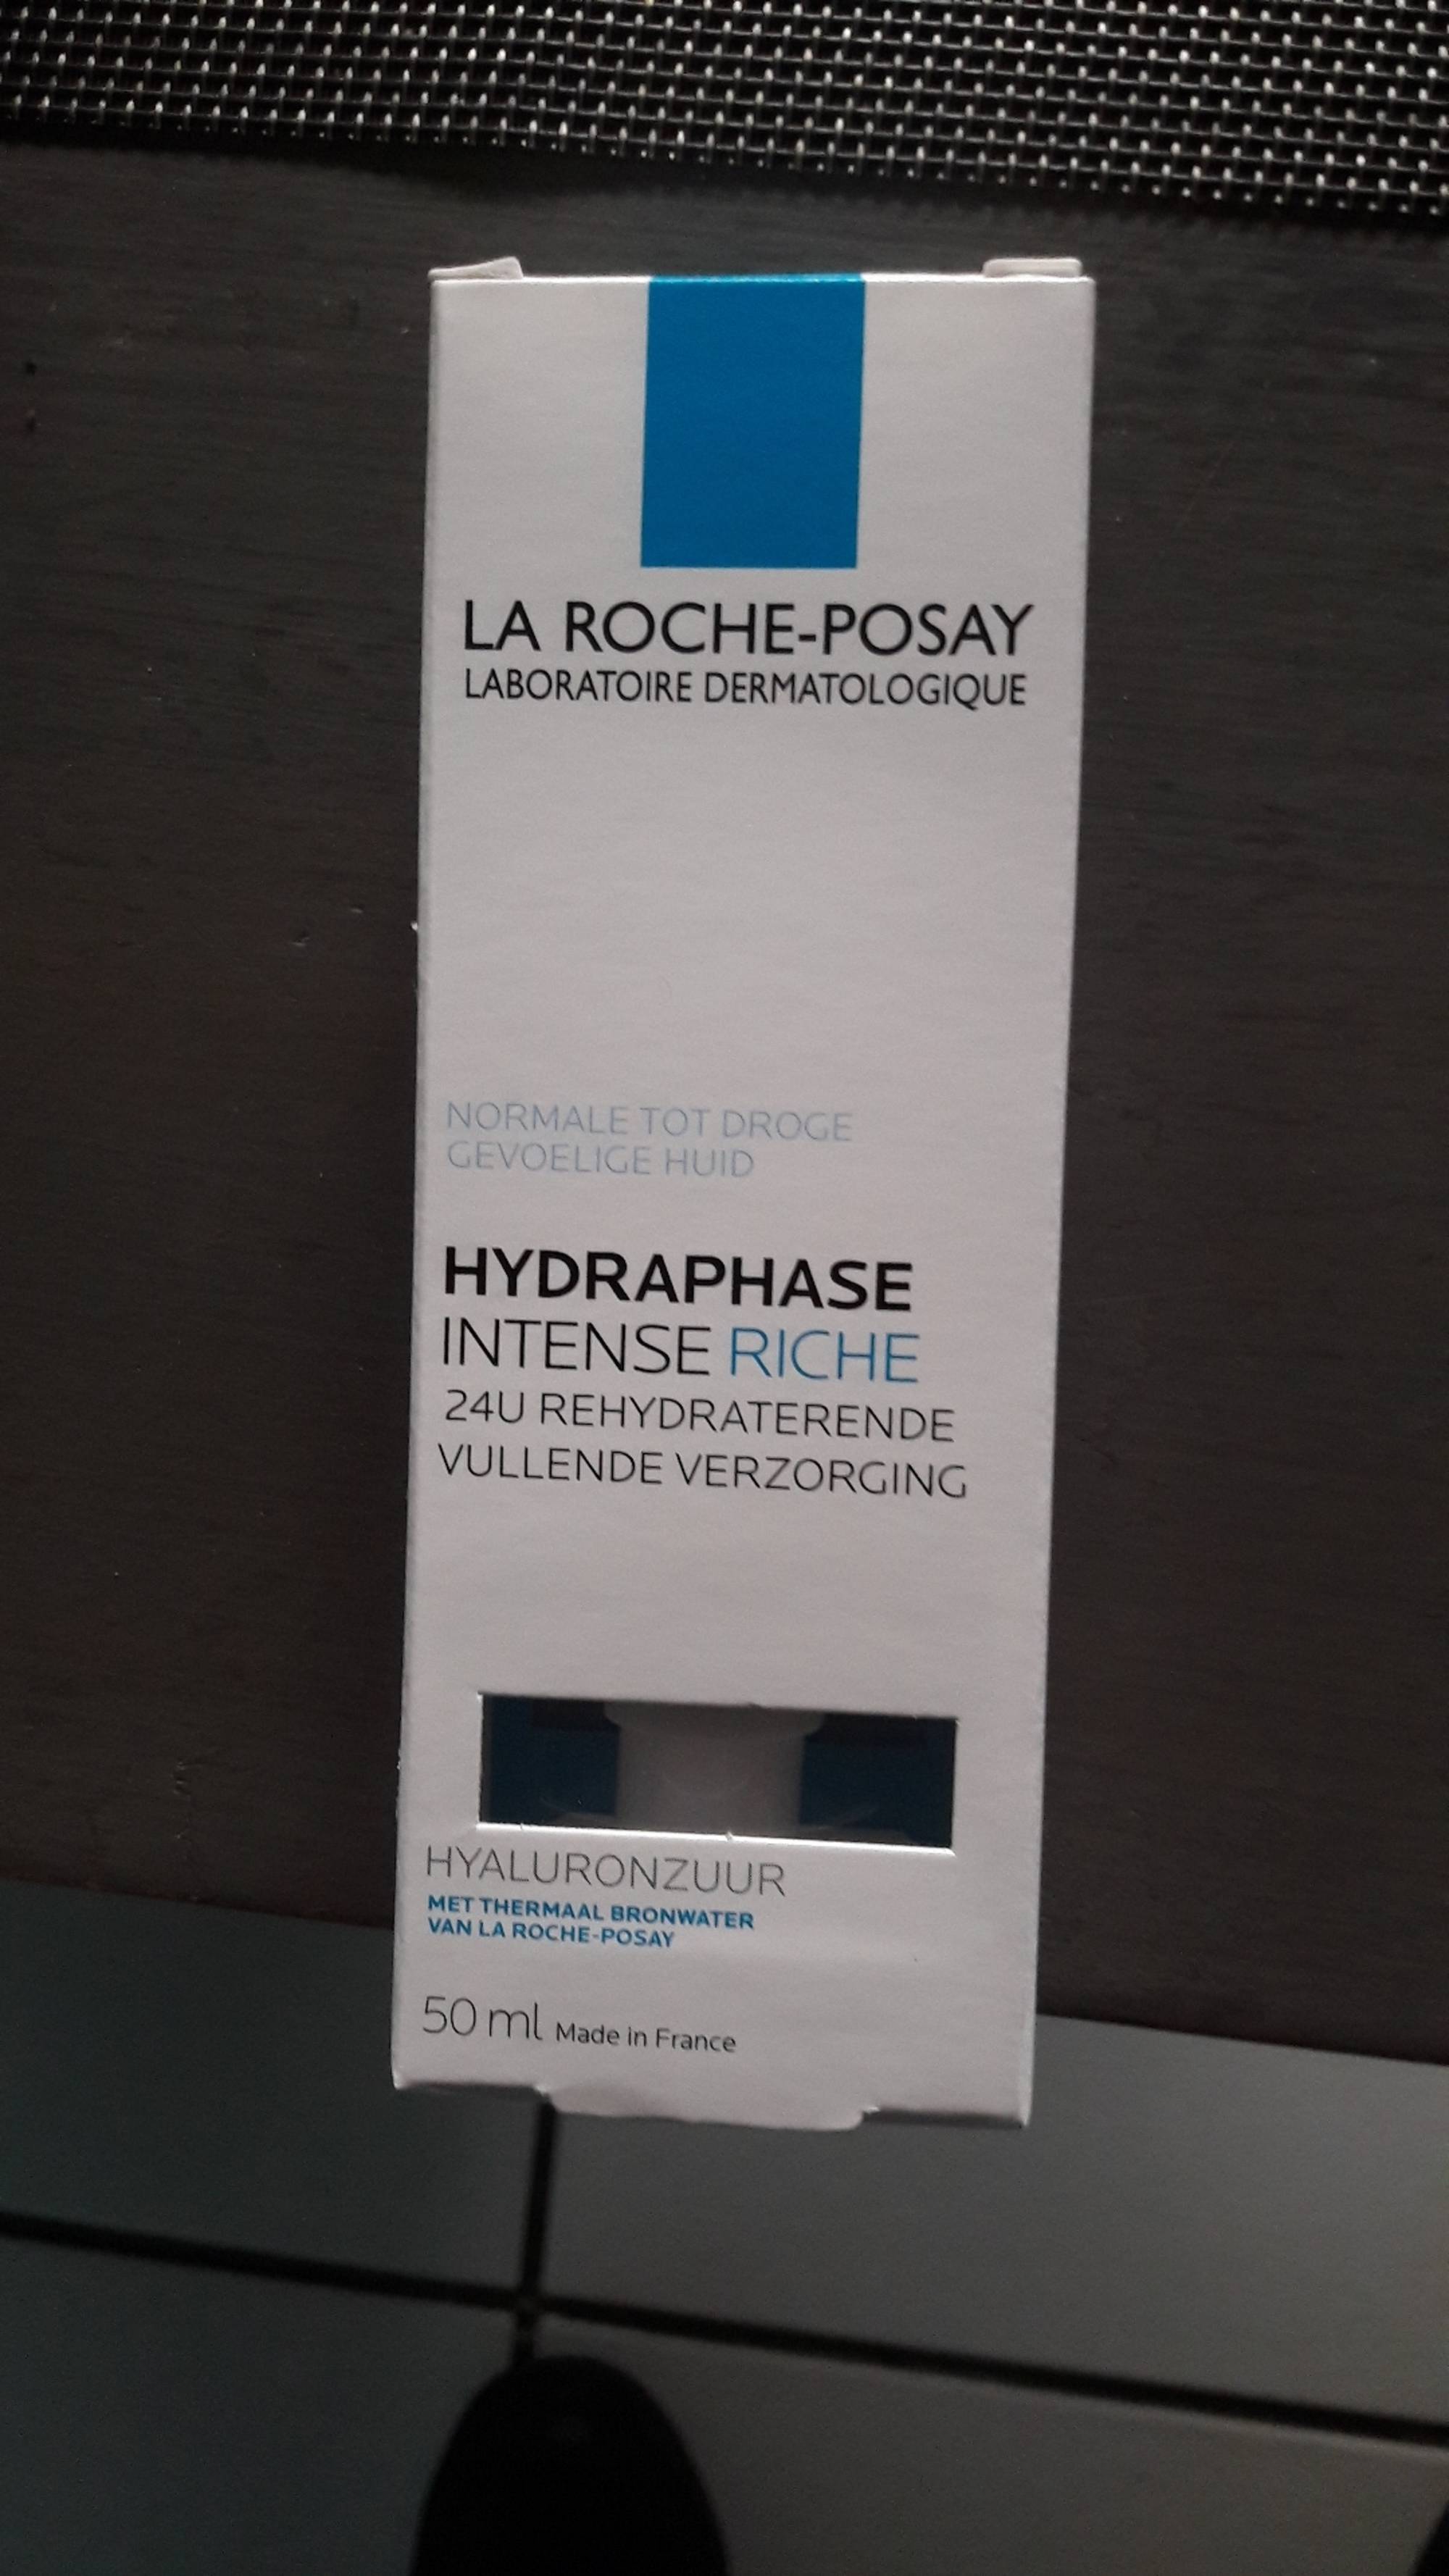 LA ROCHE-POSAY - Hydraphase intense riche